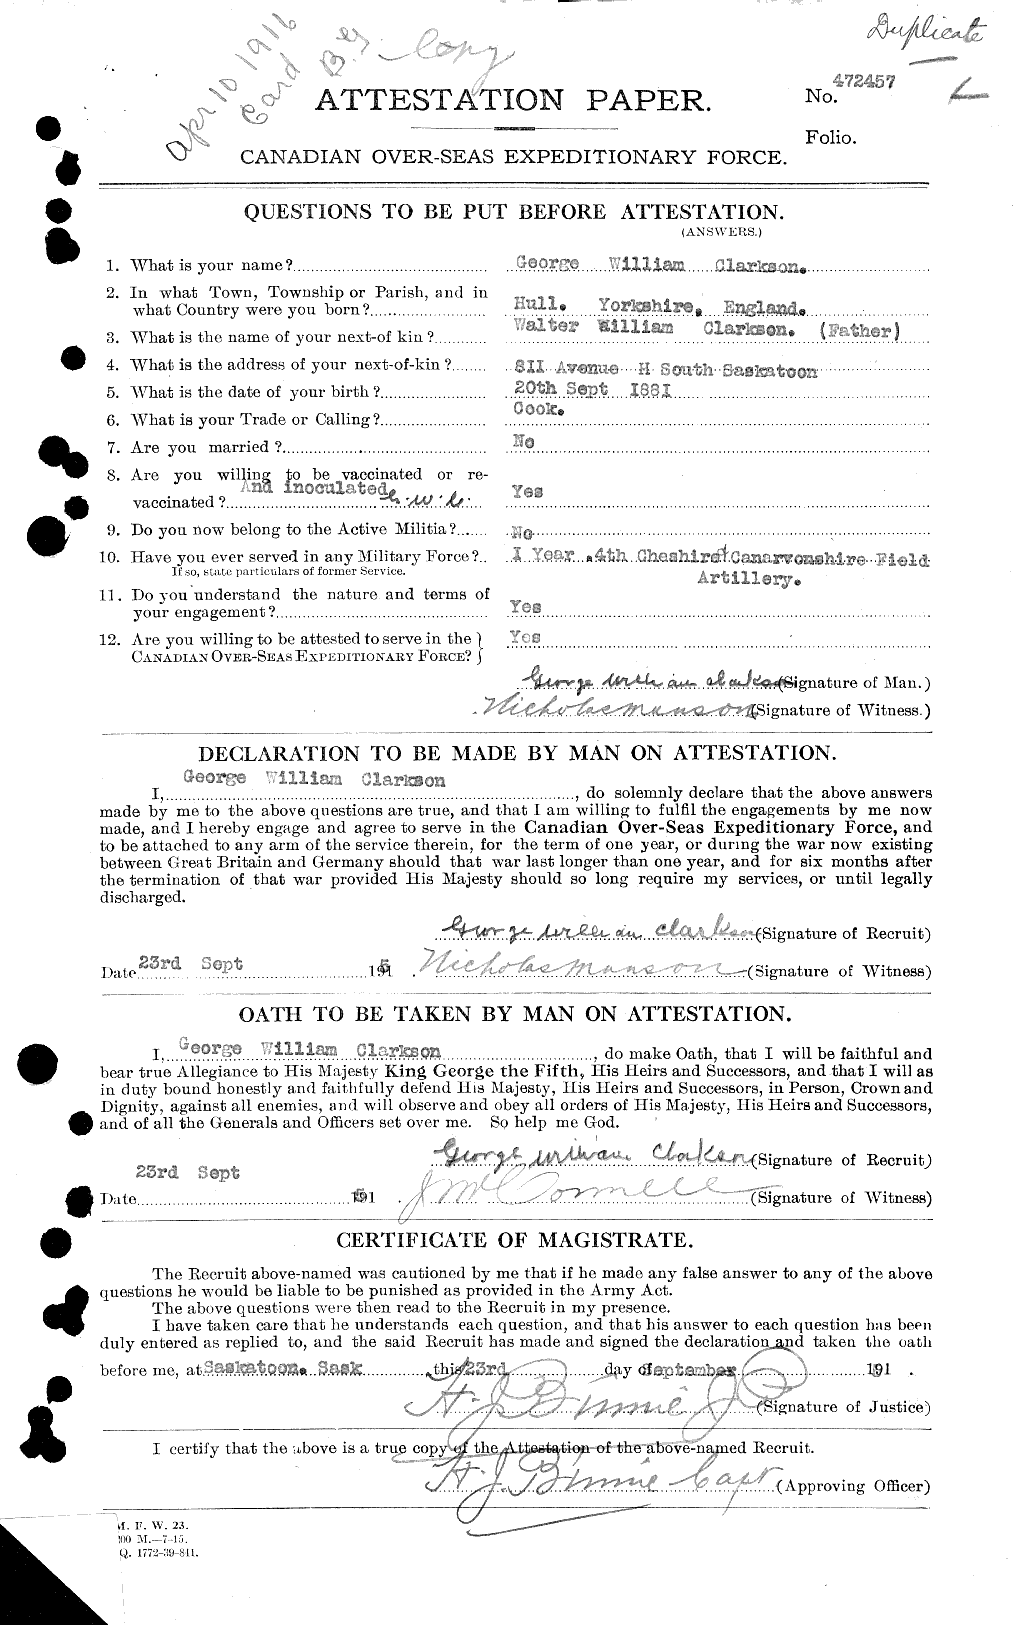 Dossiers du Personnel de la Première Guerre mondiale - CEC 021432a